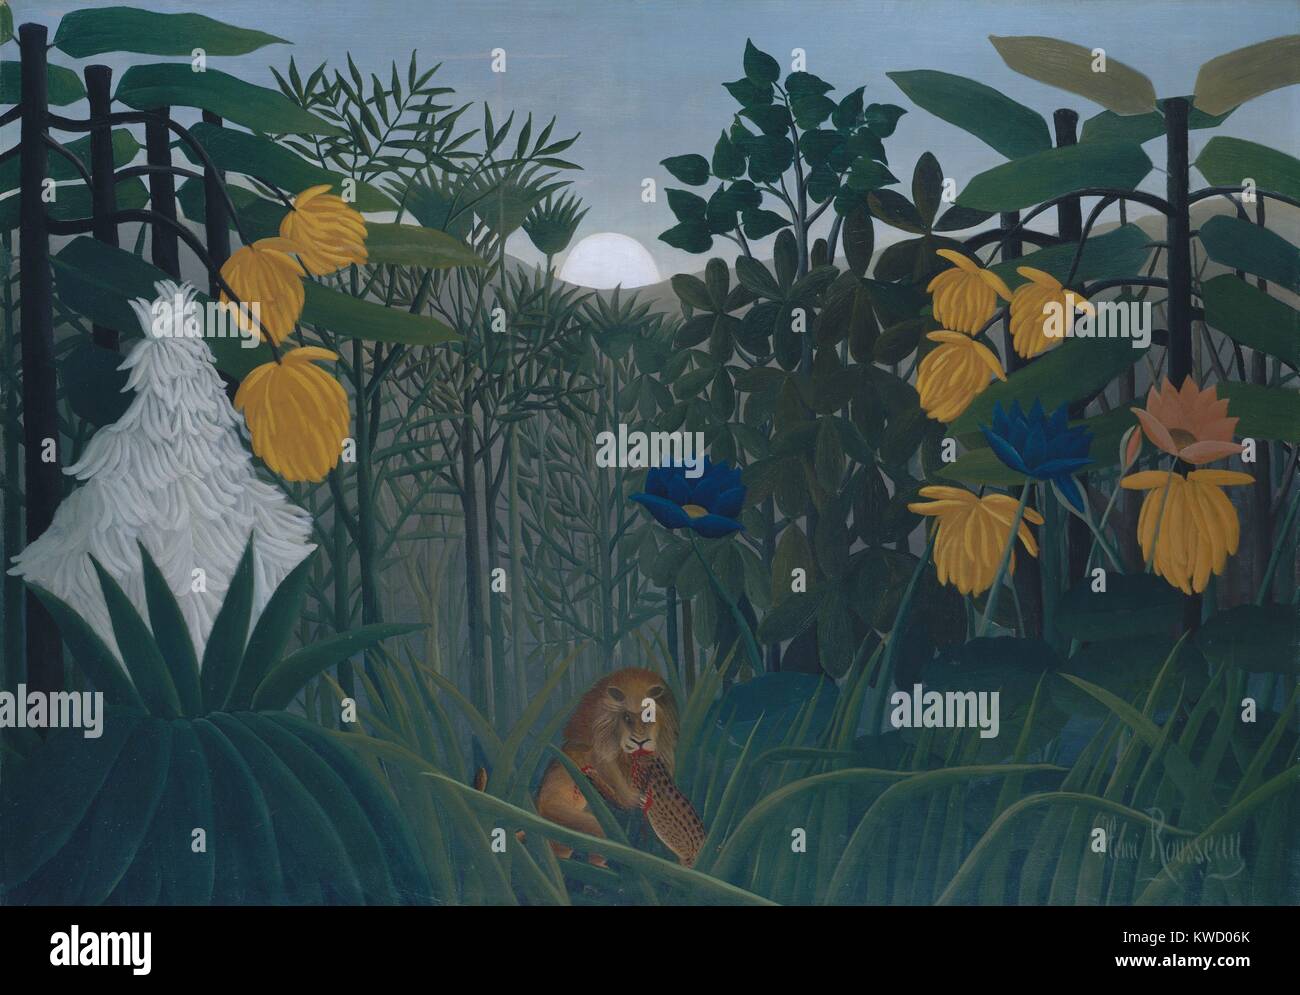 Le repas du Lion, par Henri Rousseau, 1907, le français de primitivisme, peinture, huile sur toile. L'artiste naïf autodidacte basé la végétation exotique sur des études qu'il a fait à Paris's Botanical Gardens, et adapté les bêtes sauvages de populaires illustrat (BSLOC 2017 5 126) Banque D'Images